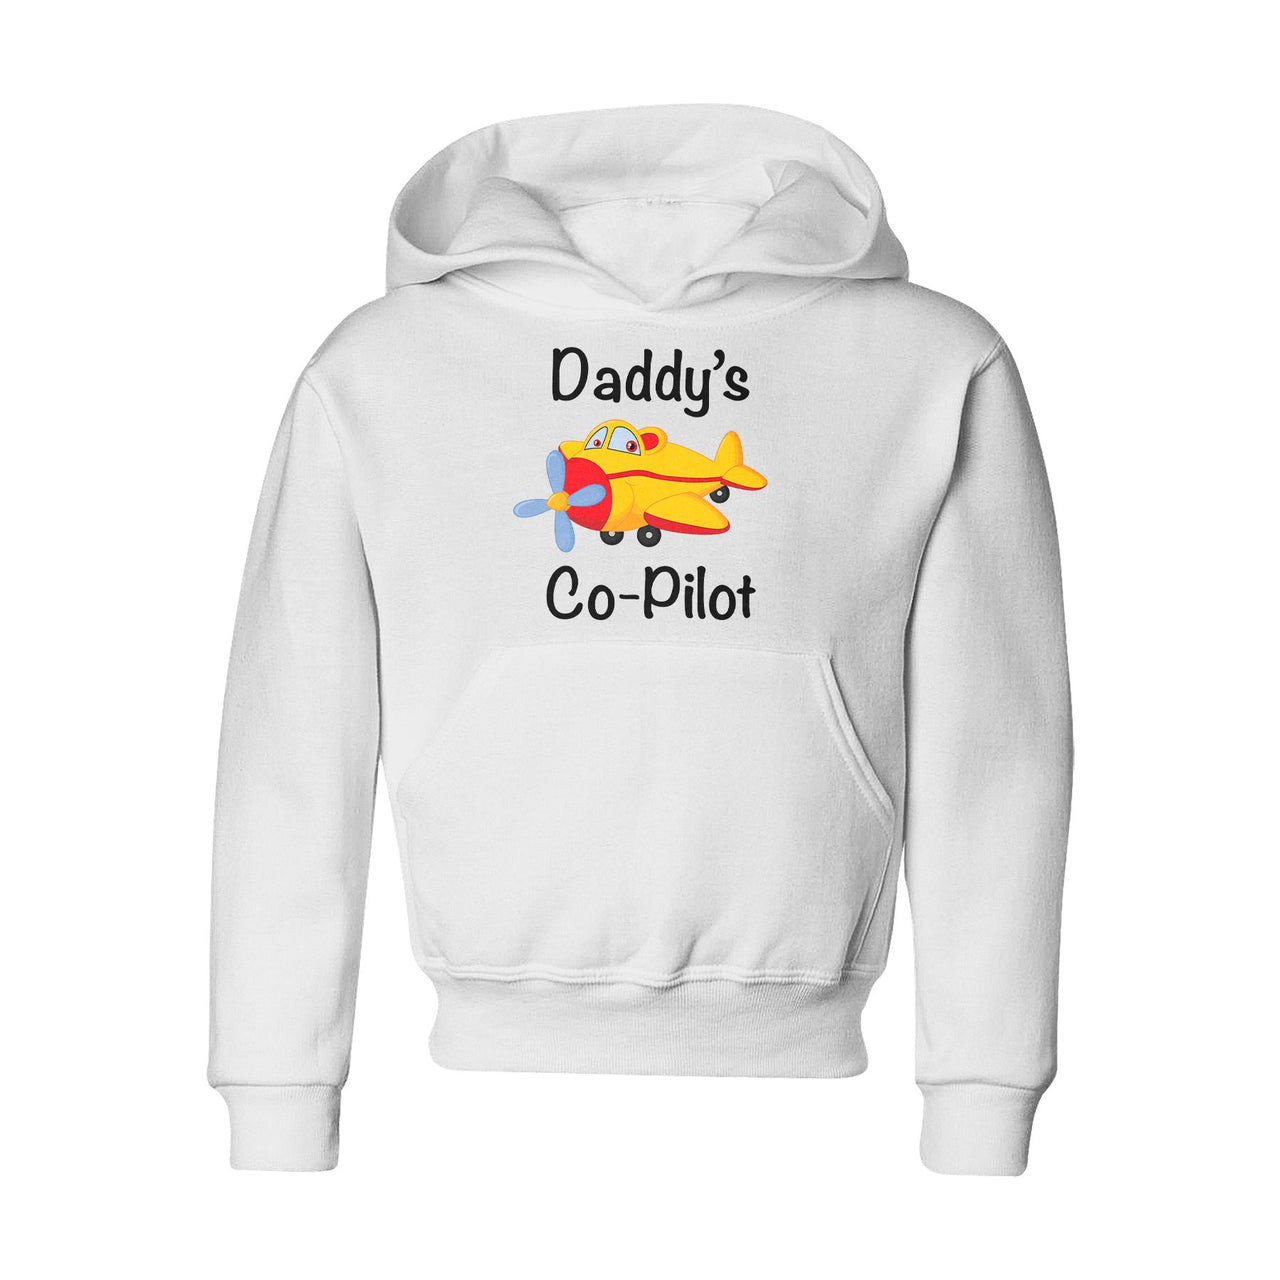 Daddy's CoPilot (Propeller) Designed "CHILDREN" Hoodies